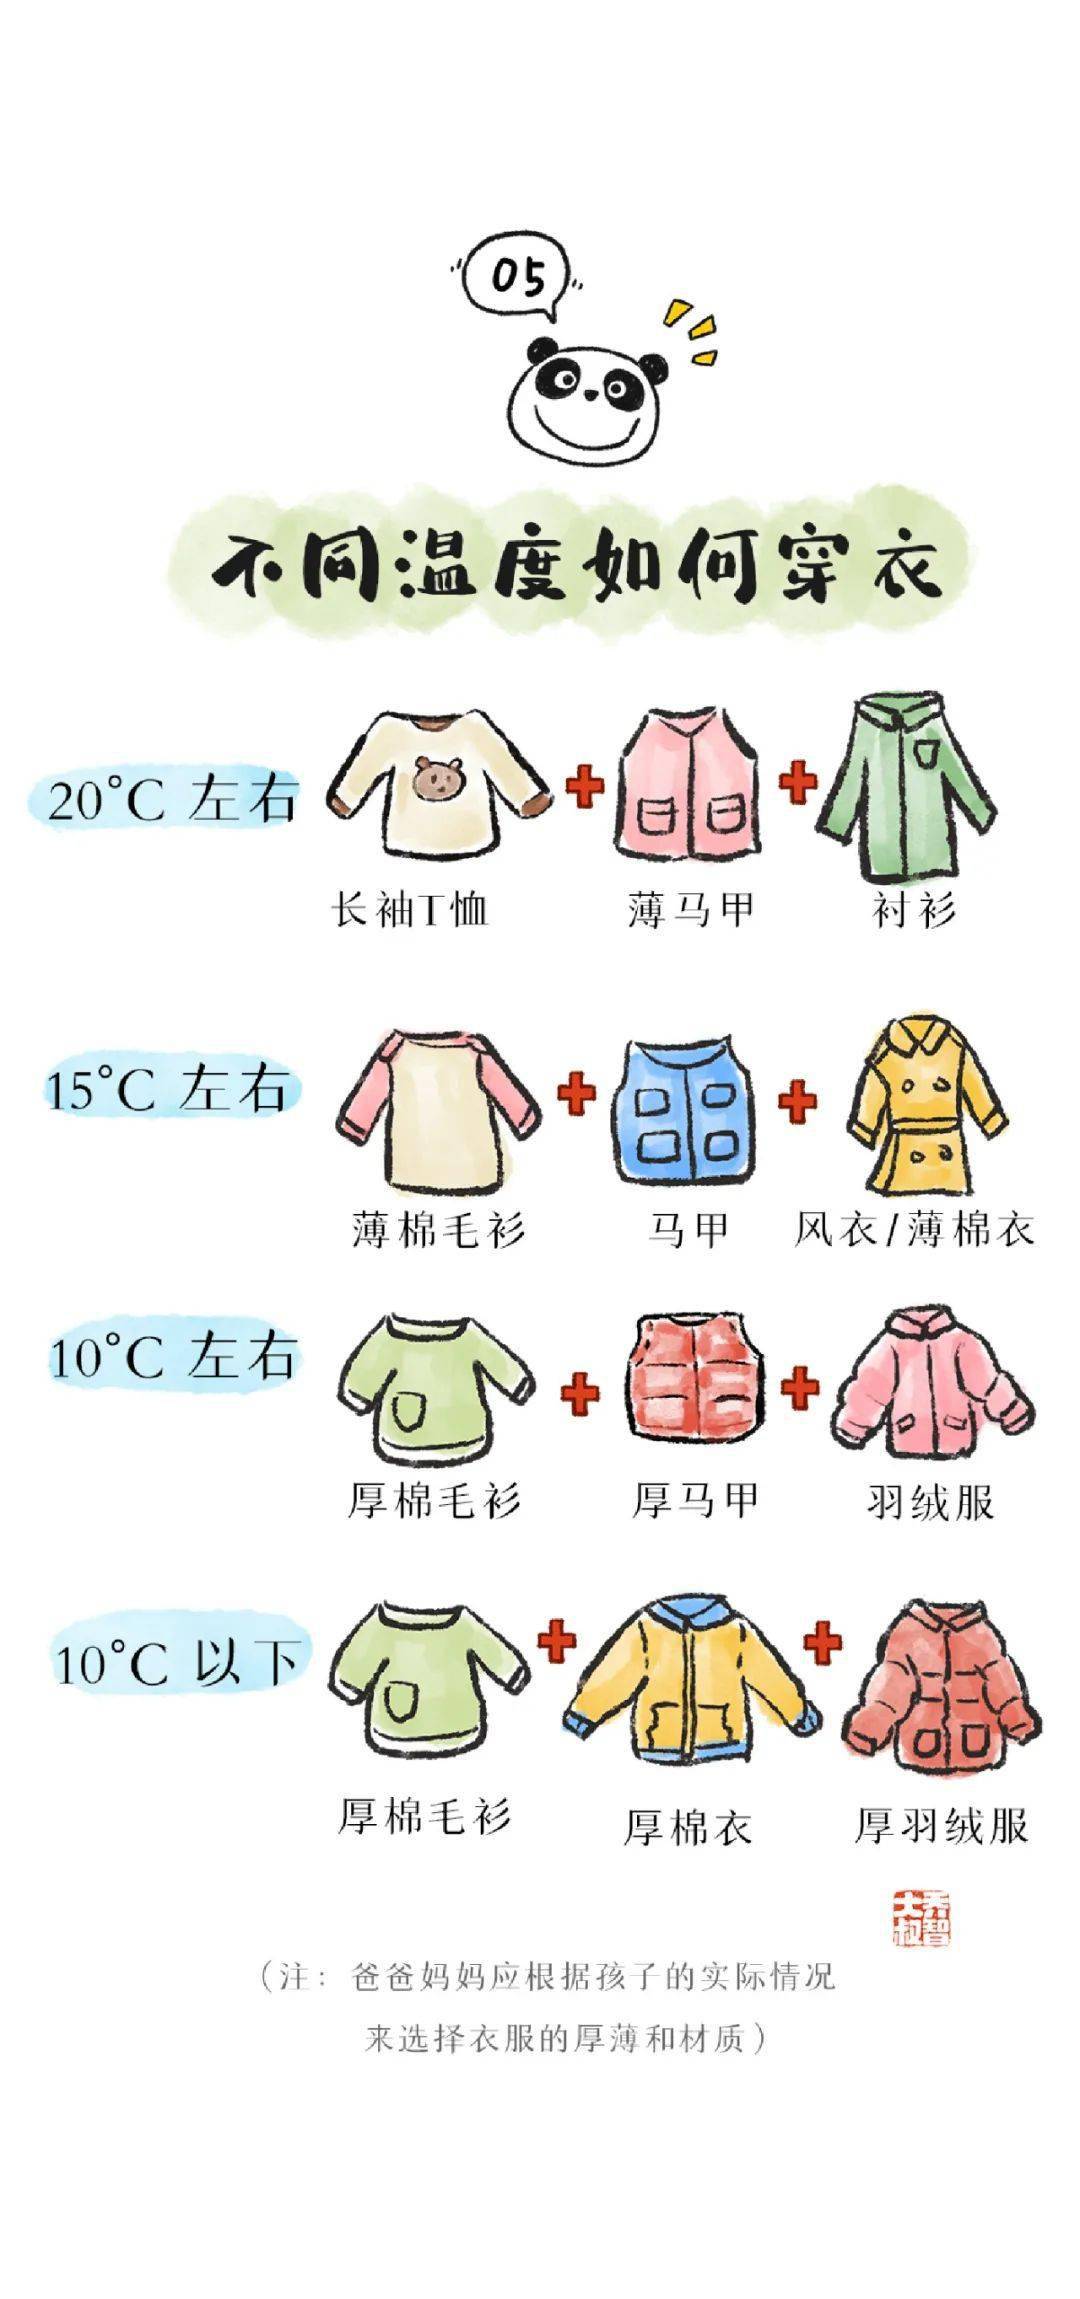 春季气温多变,给孩子的穿衣指南(转给家长)